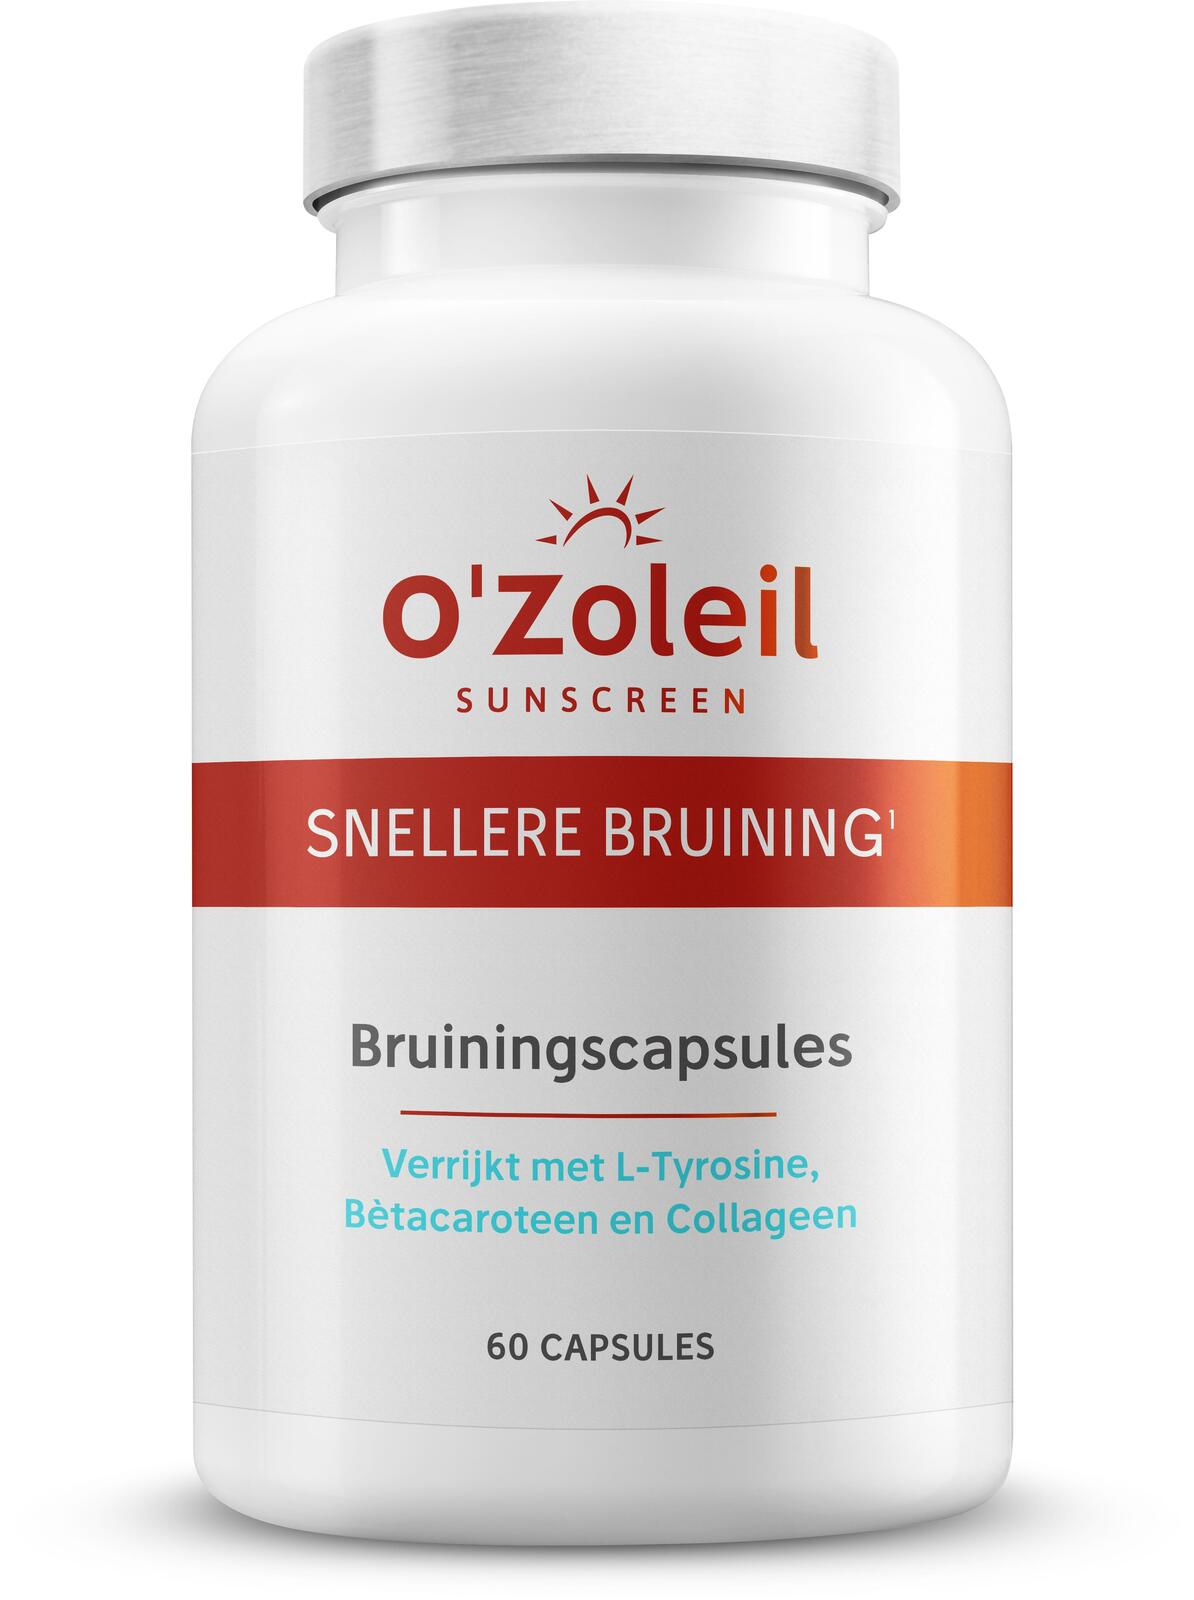 O'Zoleil Bruiningscapsules